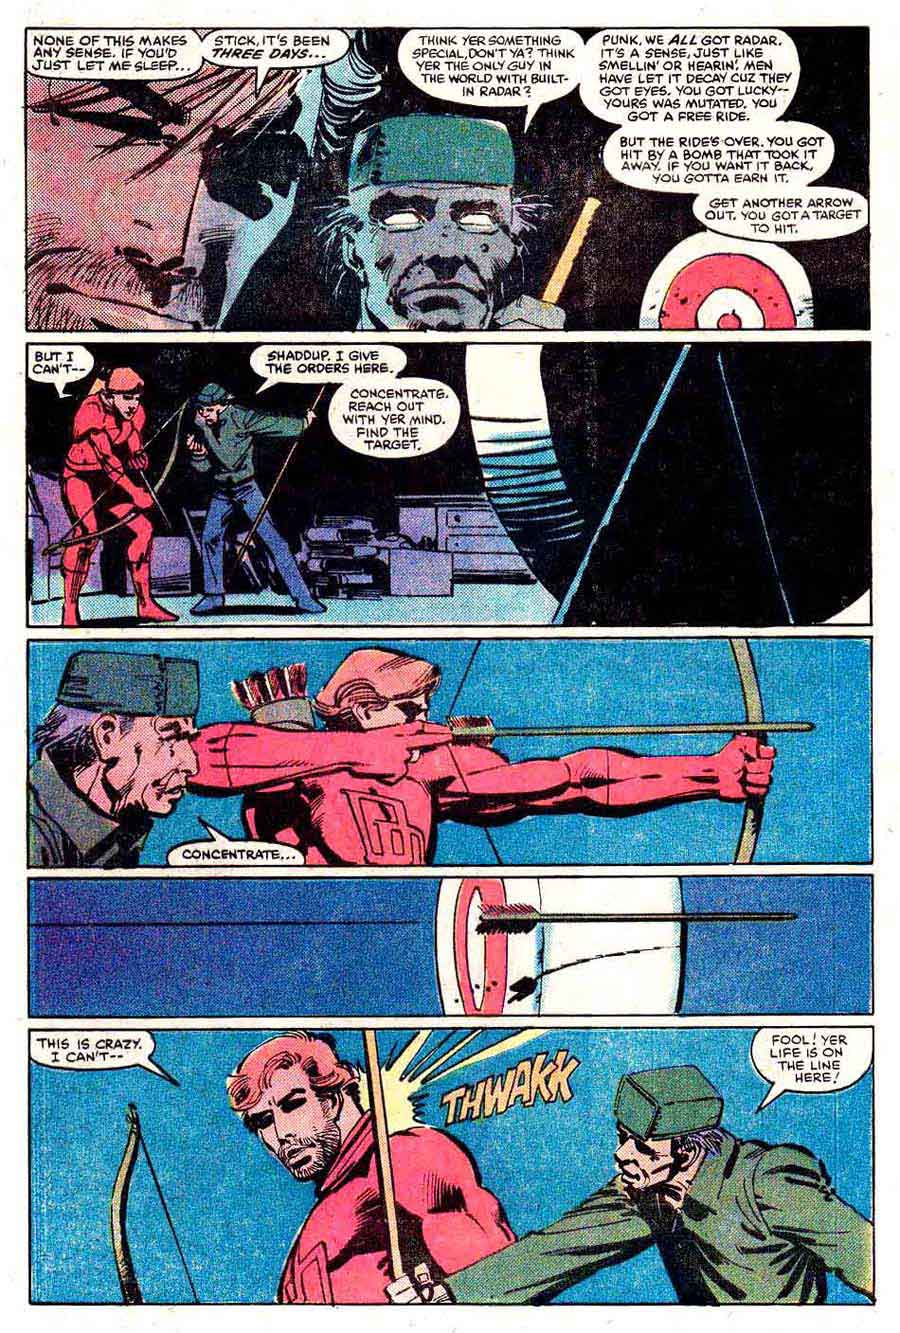 Daredevil v1 #177 marvel comic book page art by Frank Miller